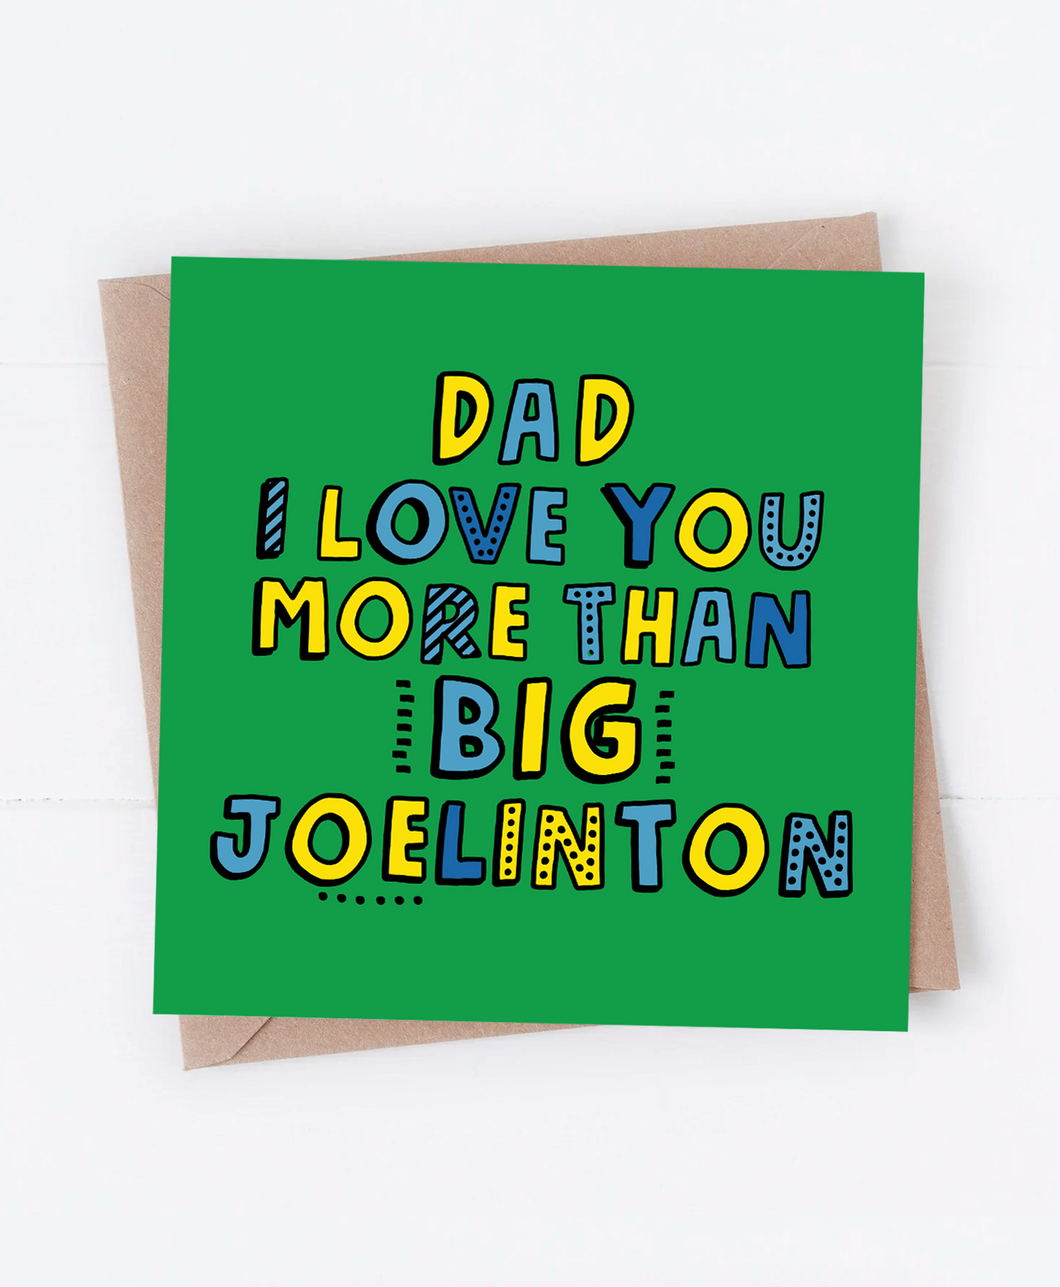 Big Joelinton - Greetings Card